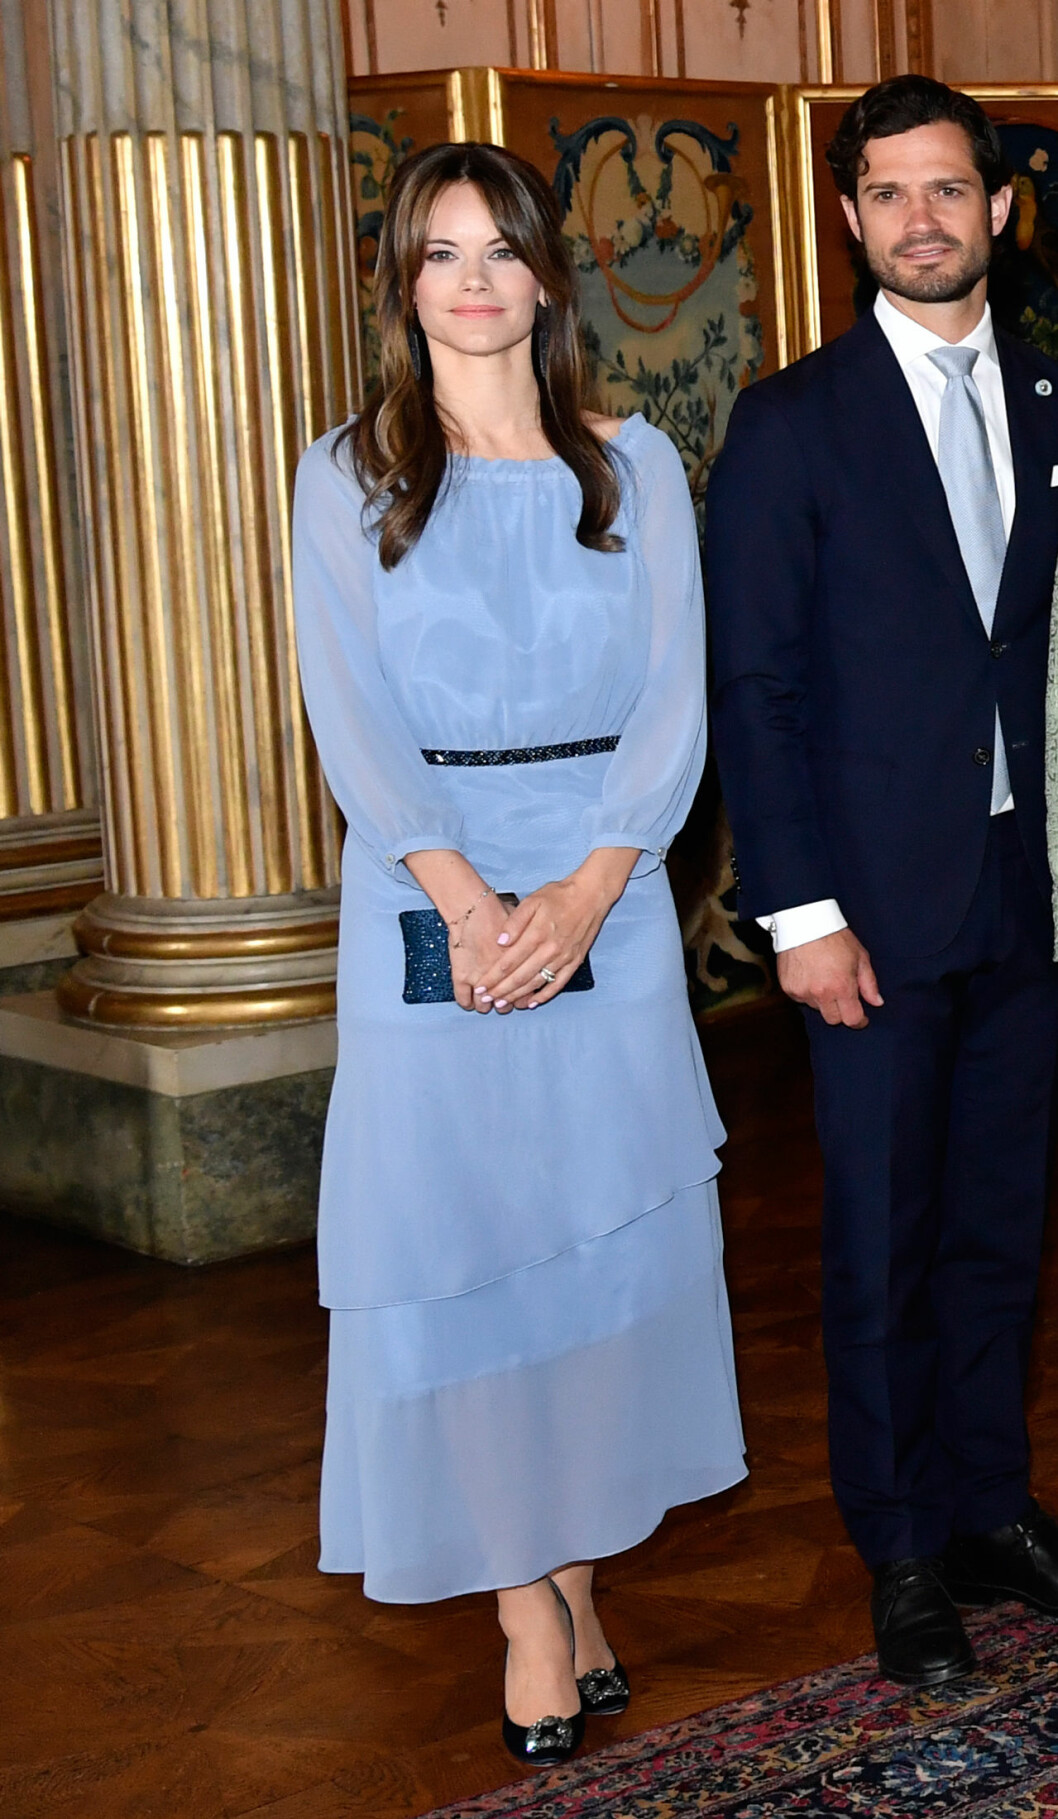 Prinsessan Sofia i en klänning från svenska designern Valerie.